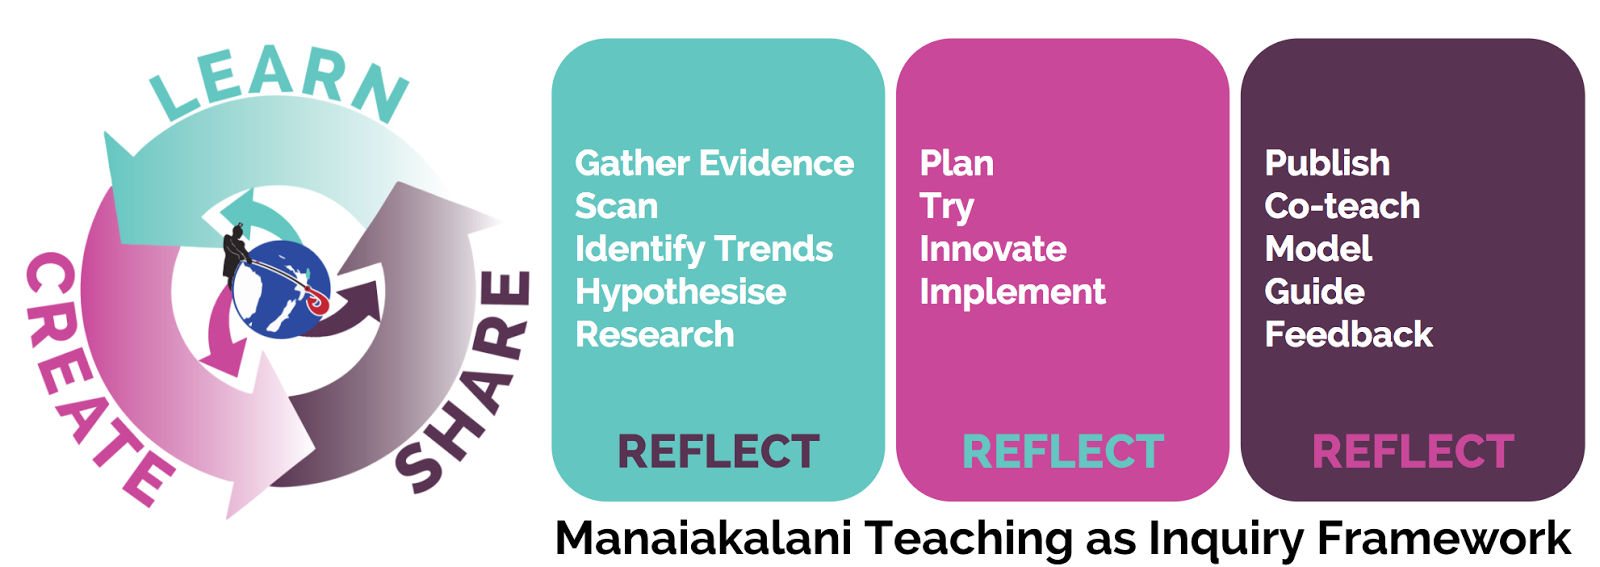 Manaiakalani Inquiry Framework